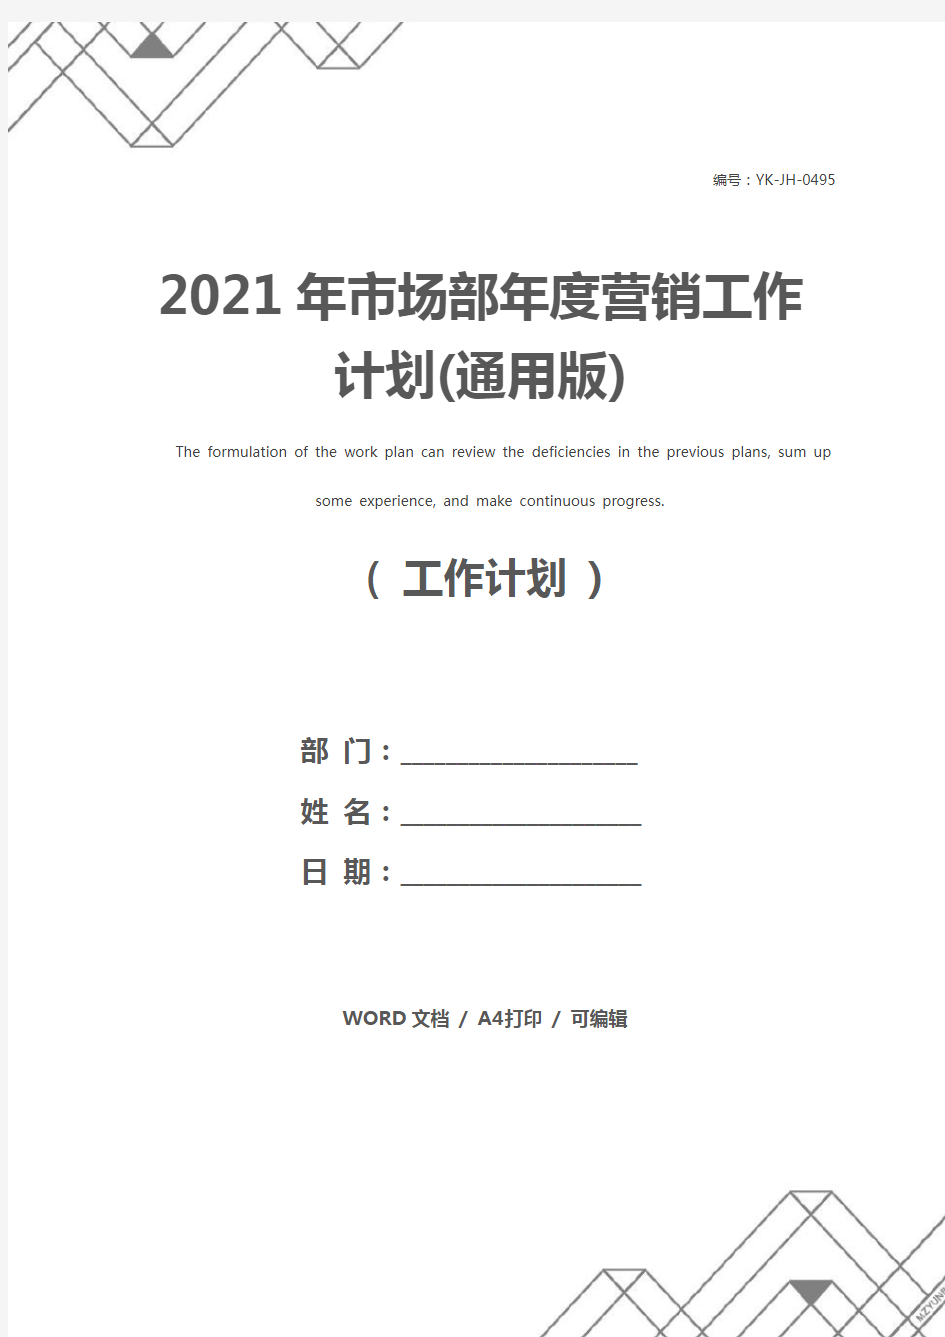 2021年市场部年度营销工作计划(通用版)